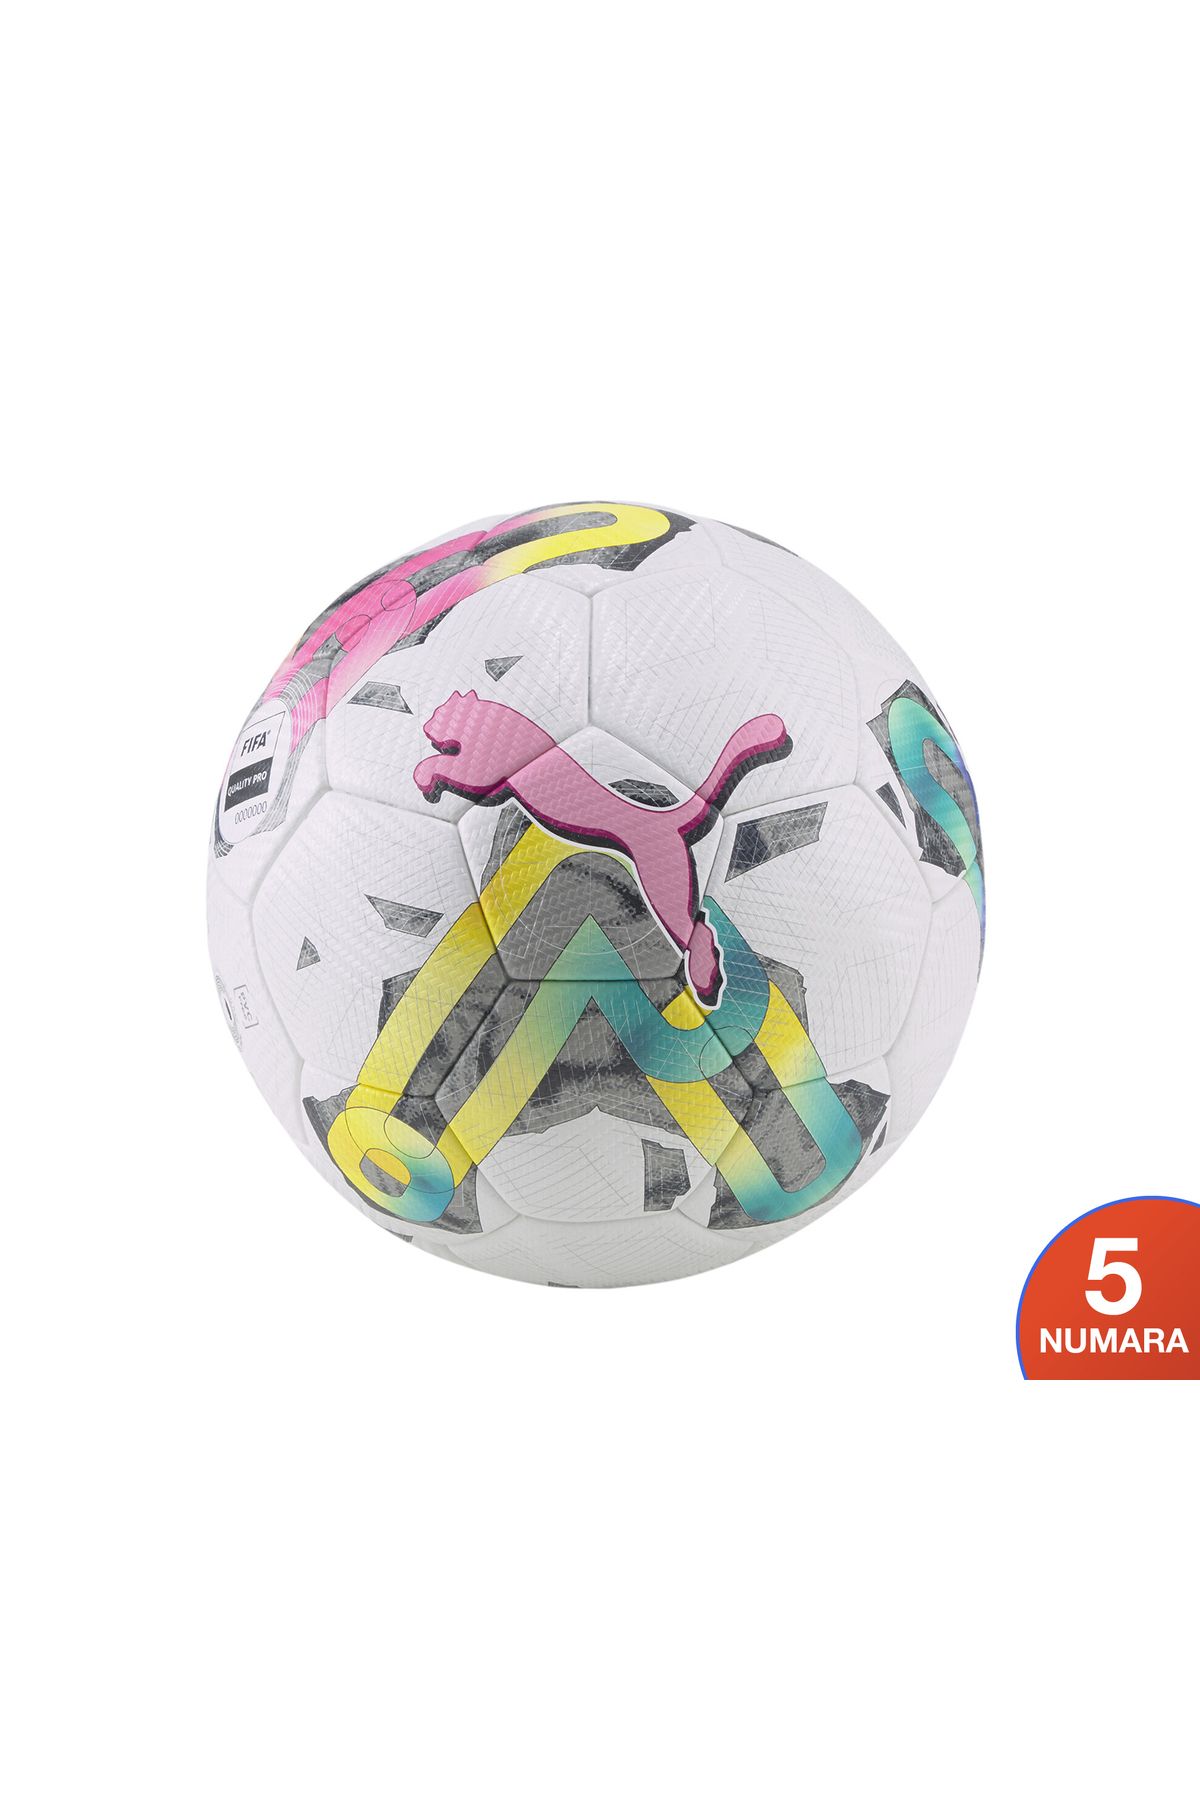 Puma Orbita 2 Tb Fifa Quality Pro Futbol Topu Renkli